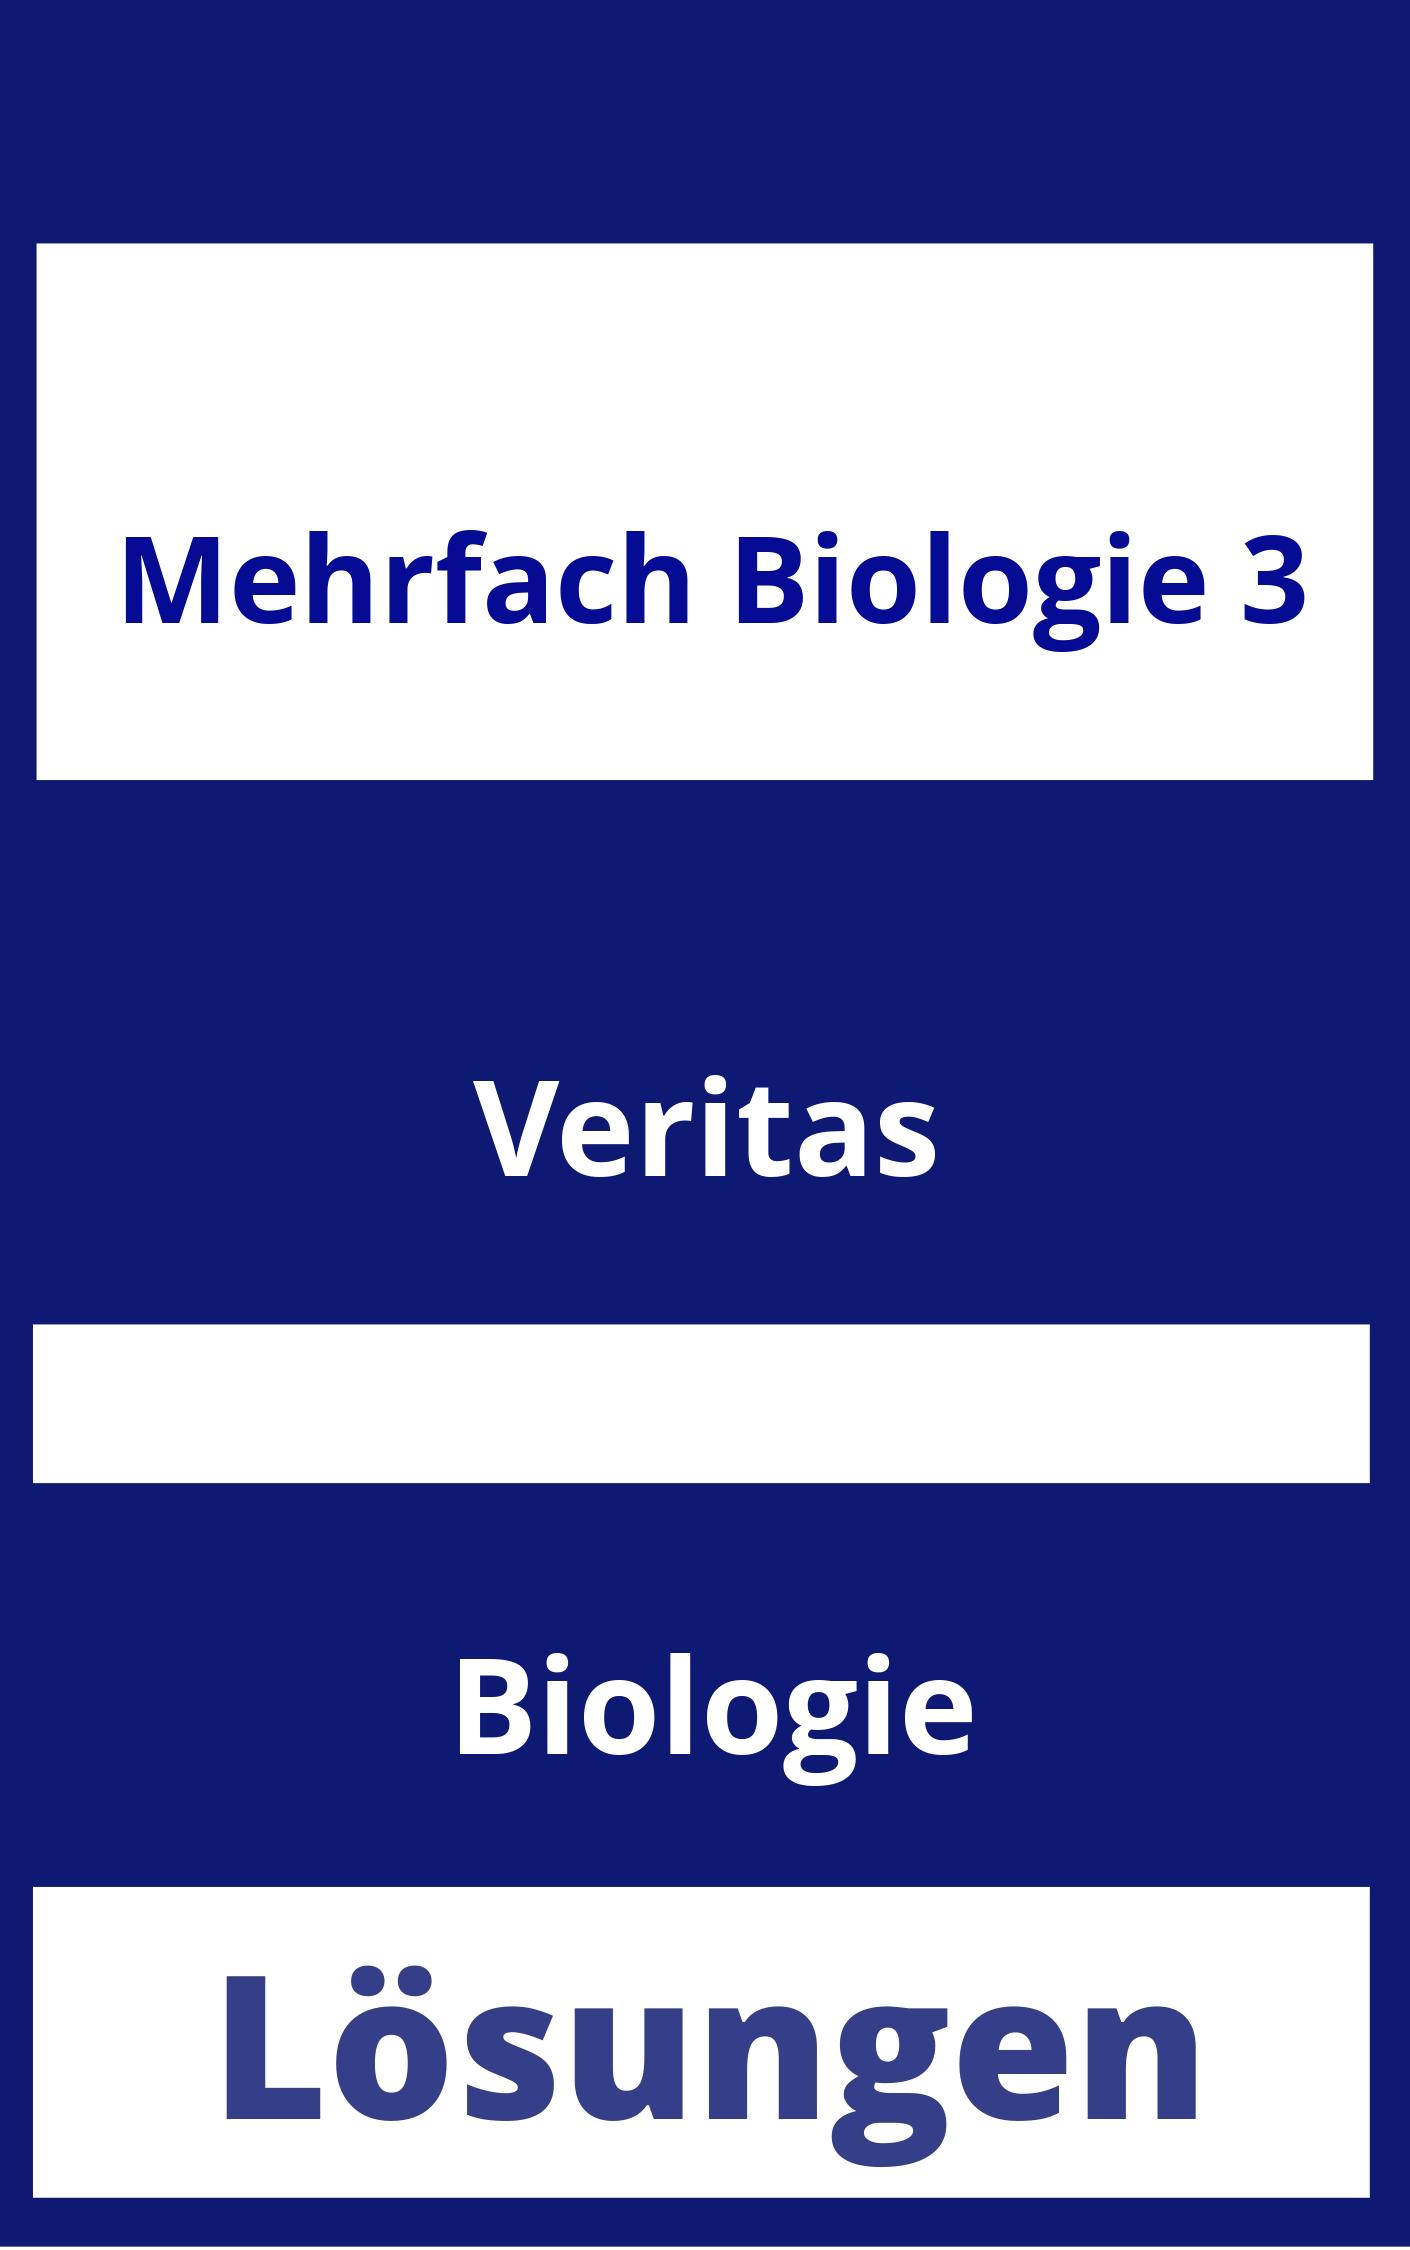 MEHRfach Biologie 3 Lösungen PDF